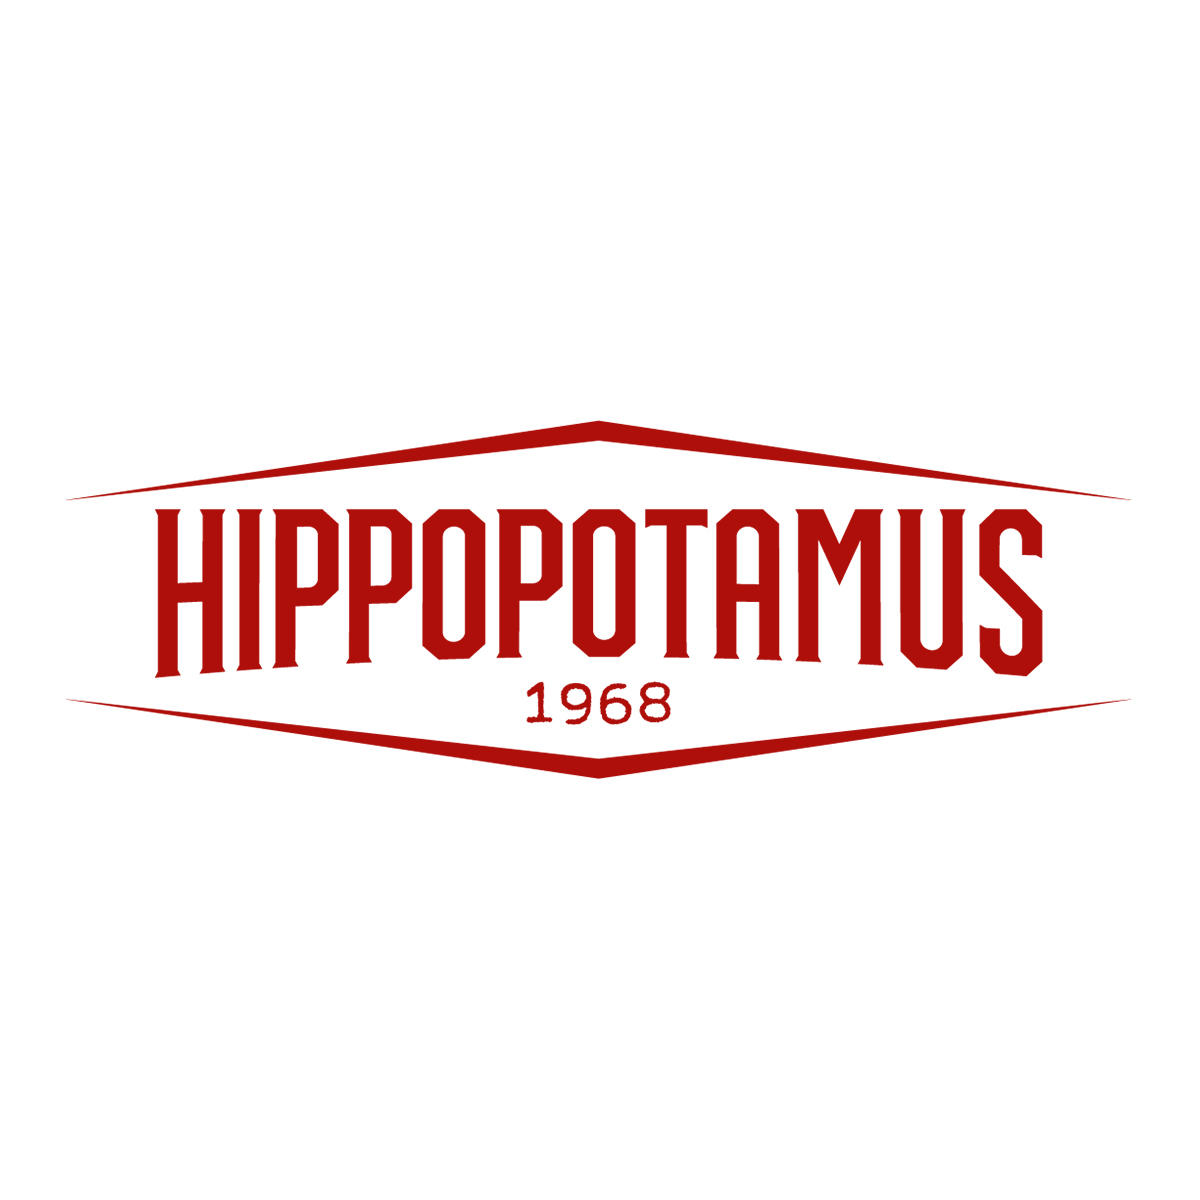 Hippopotamus Steakhouse - Restaurant - Coudekerque-Branche - 03 74 88 00 38 France | ShowMeLocal.com